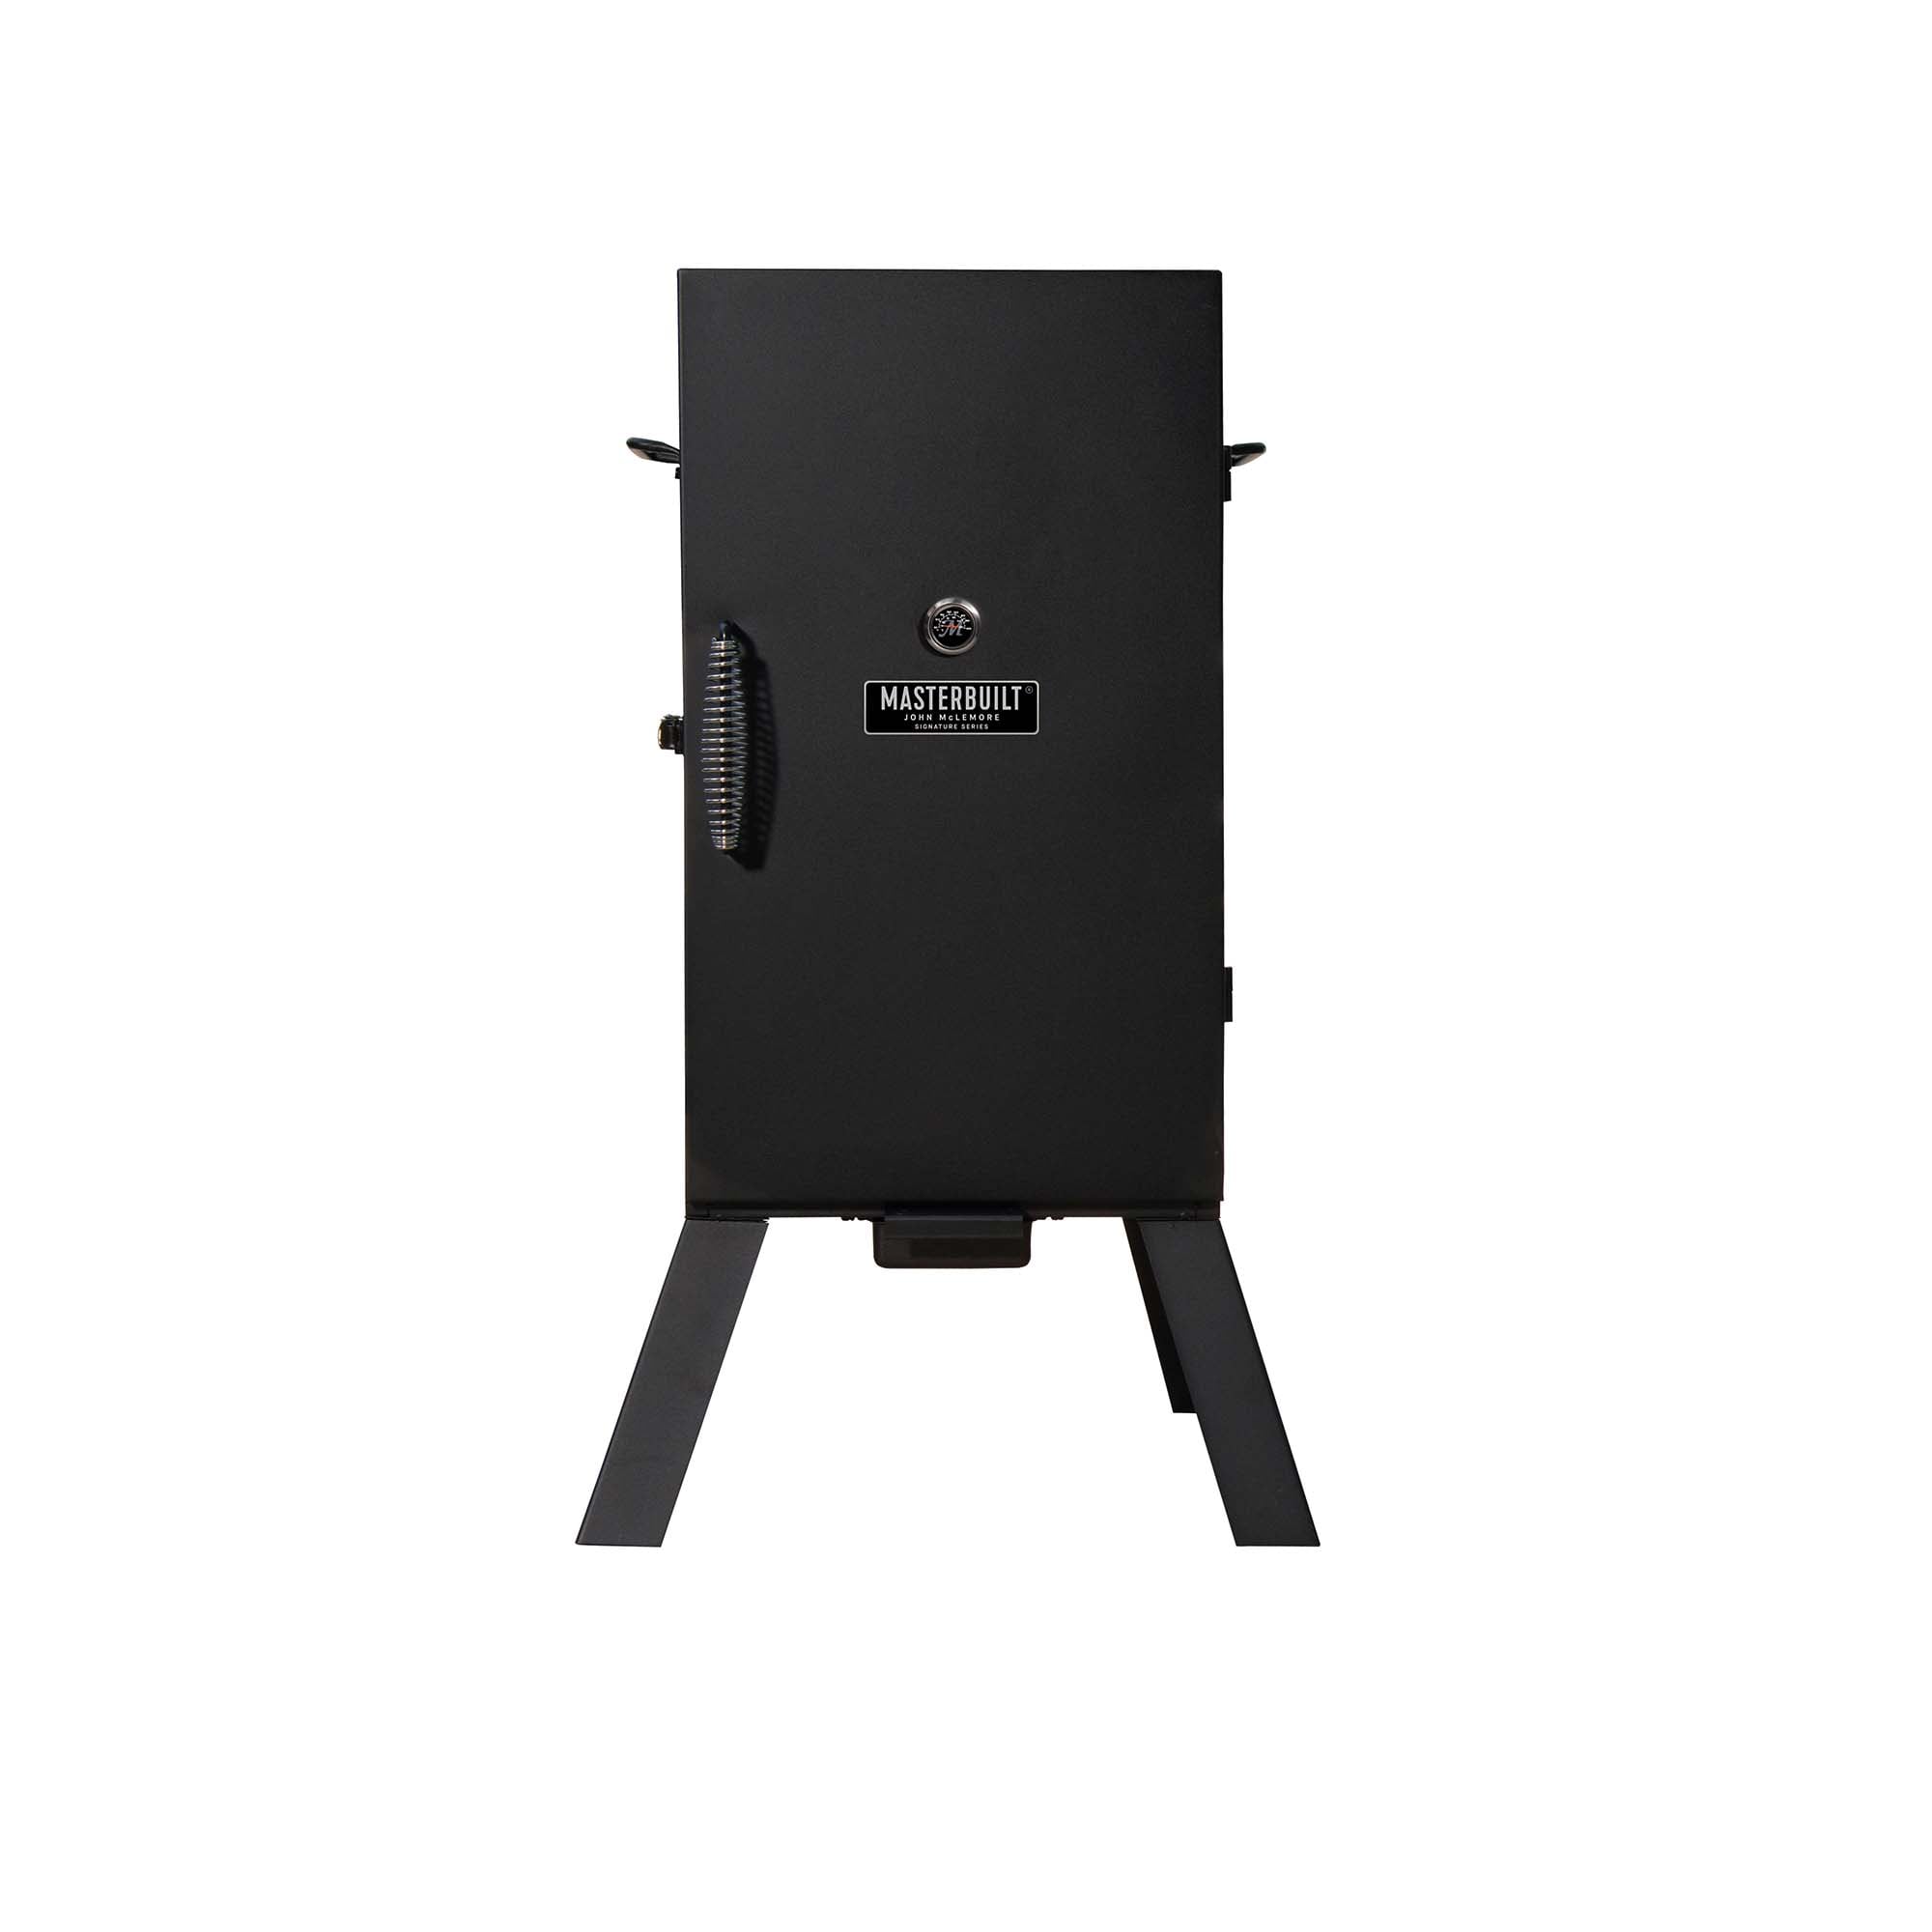 Select Lowe's - Masterbuilt John McLemore Signature Series 530-Sq in Black Electric Smoker - $89.57